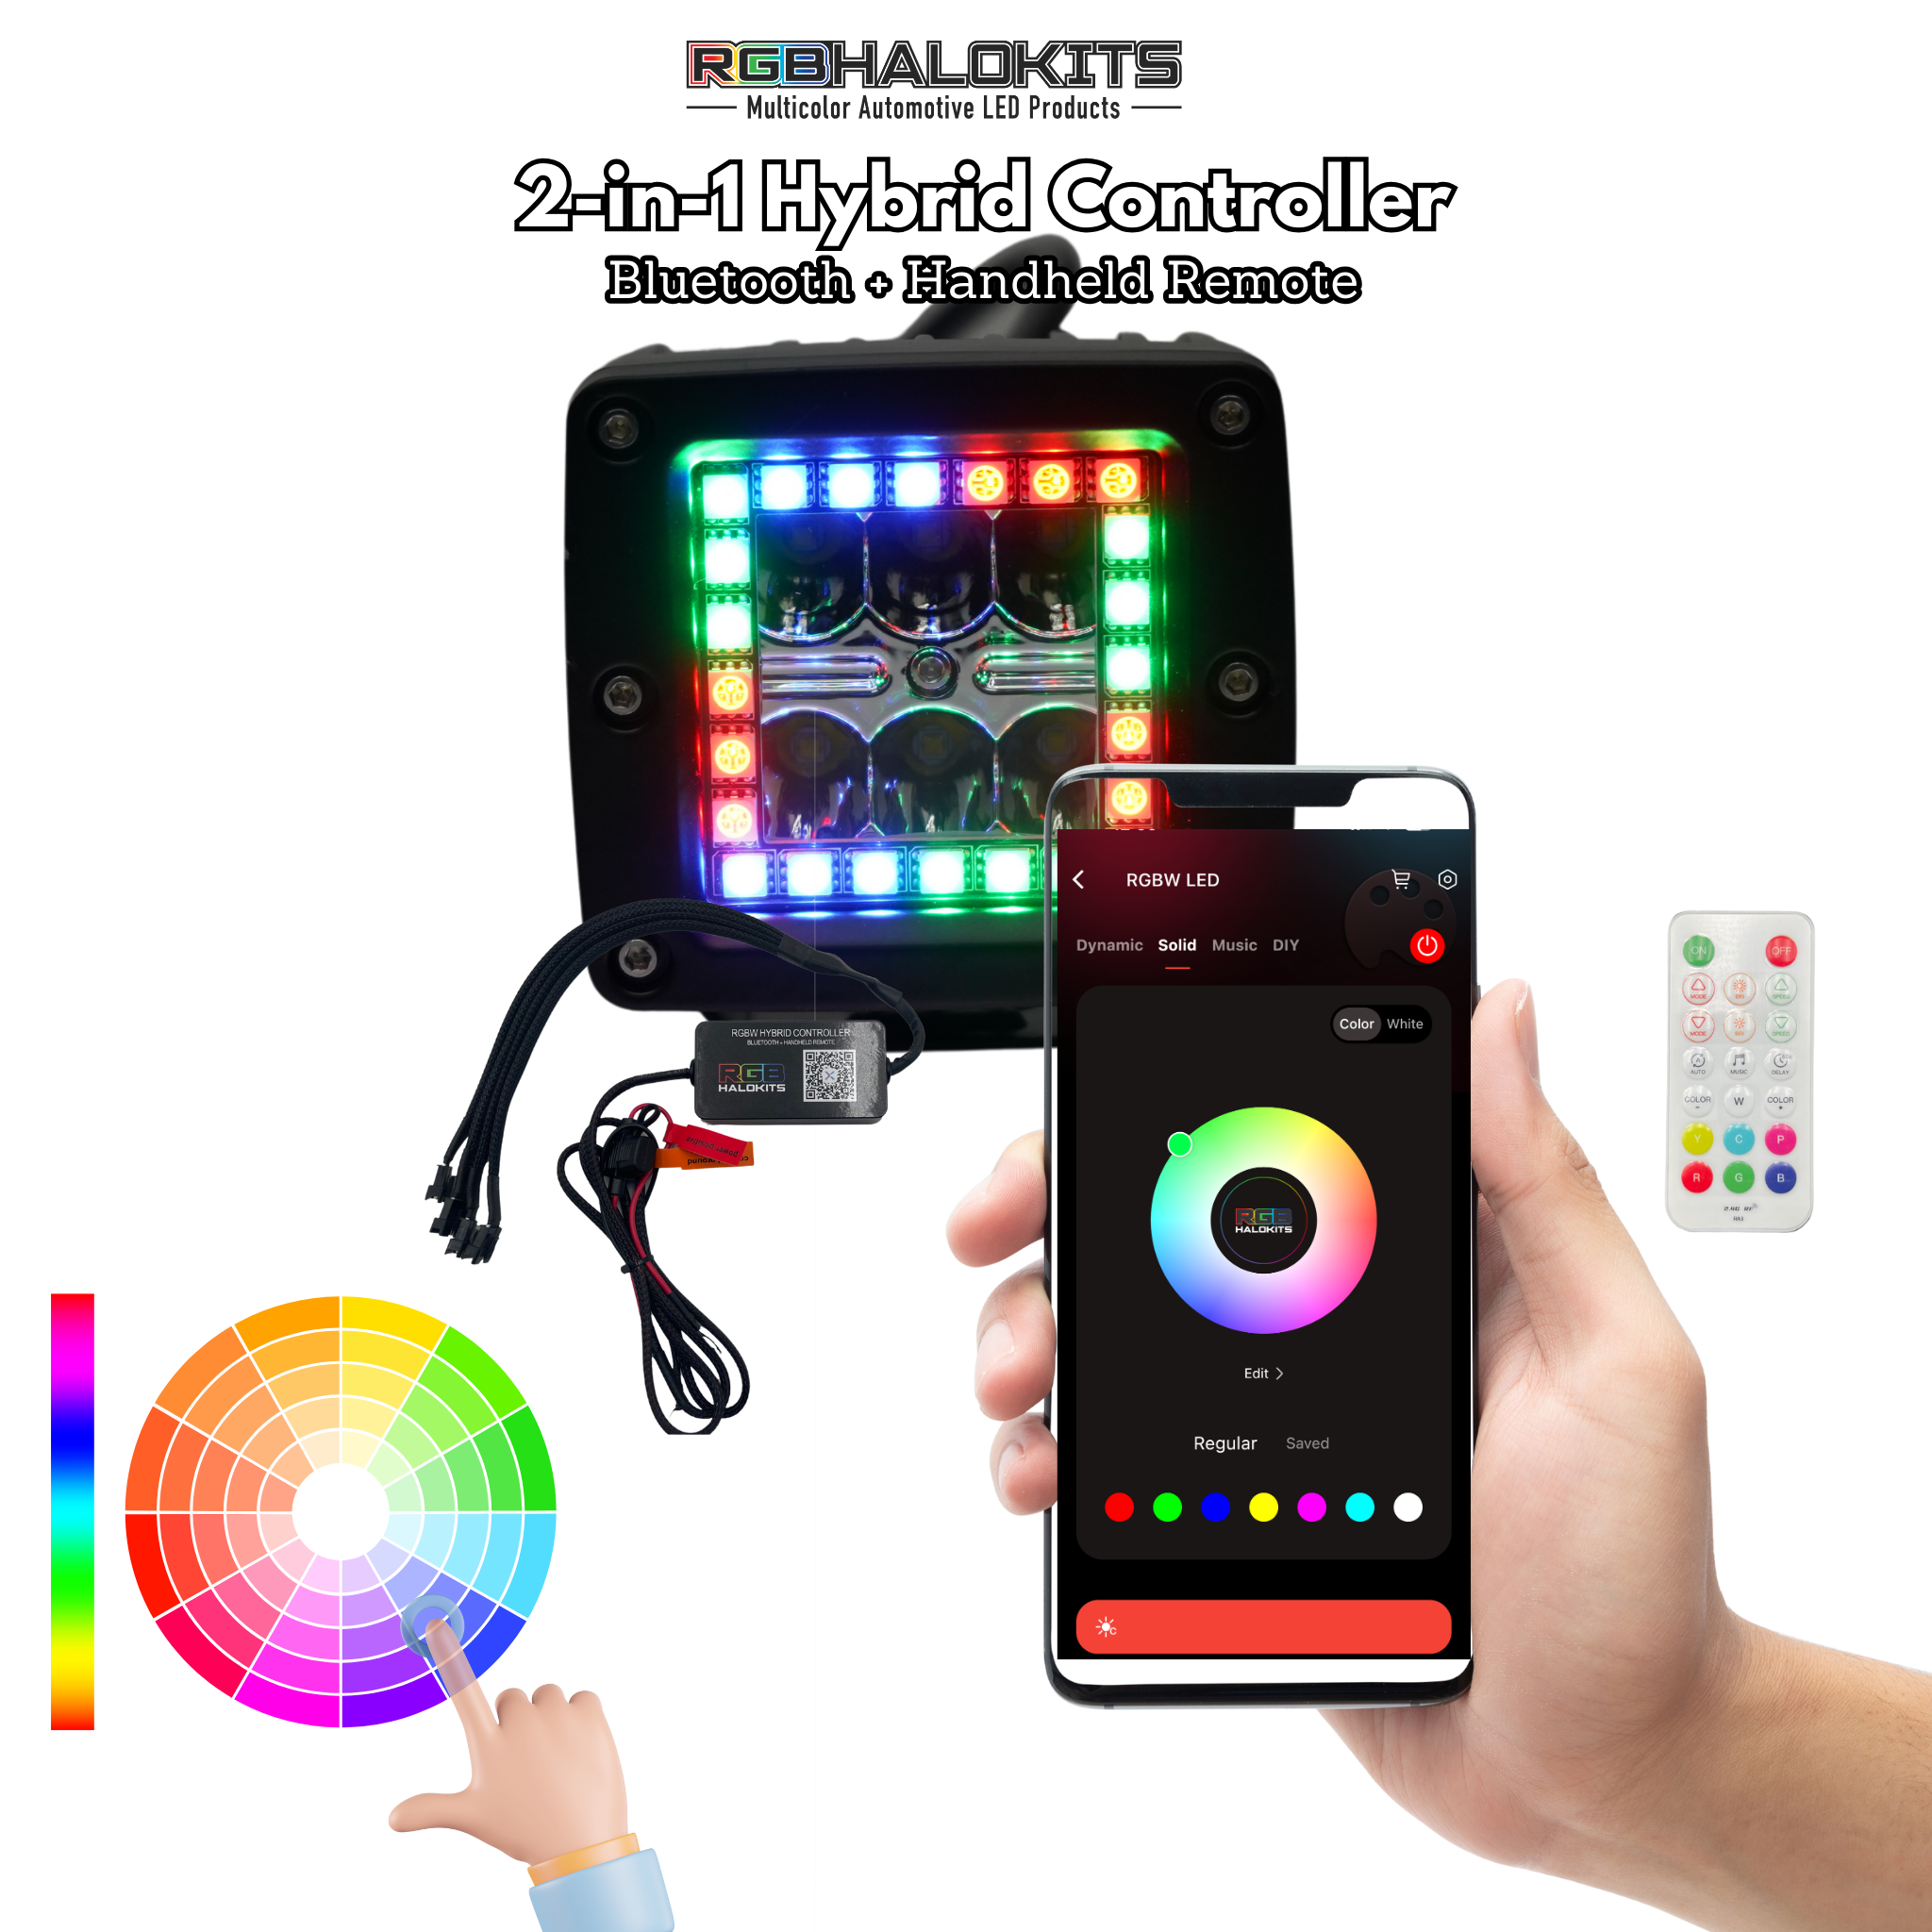 3x3 Multicolor LED Pods: Flow Series